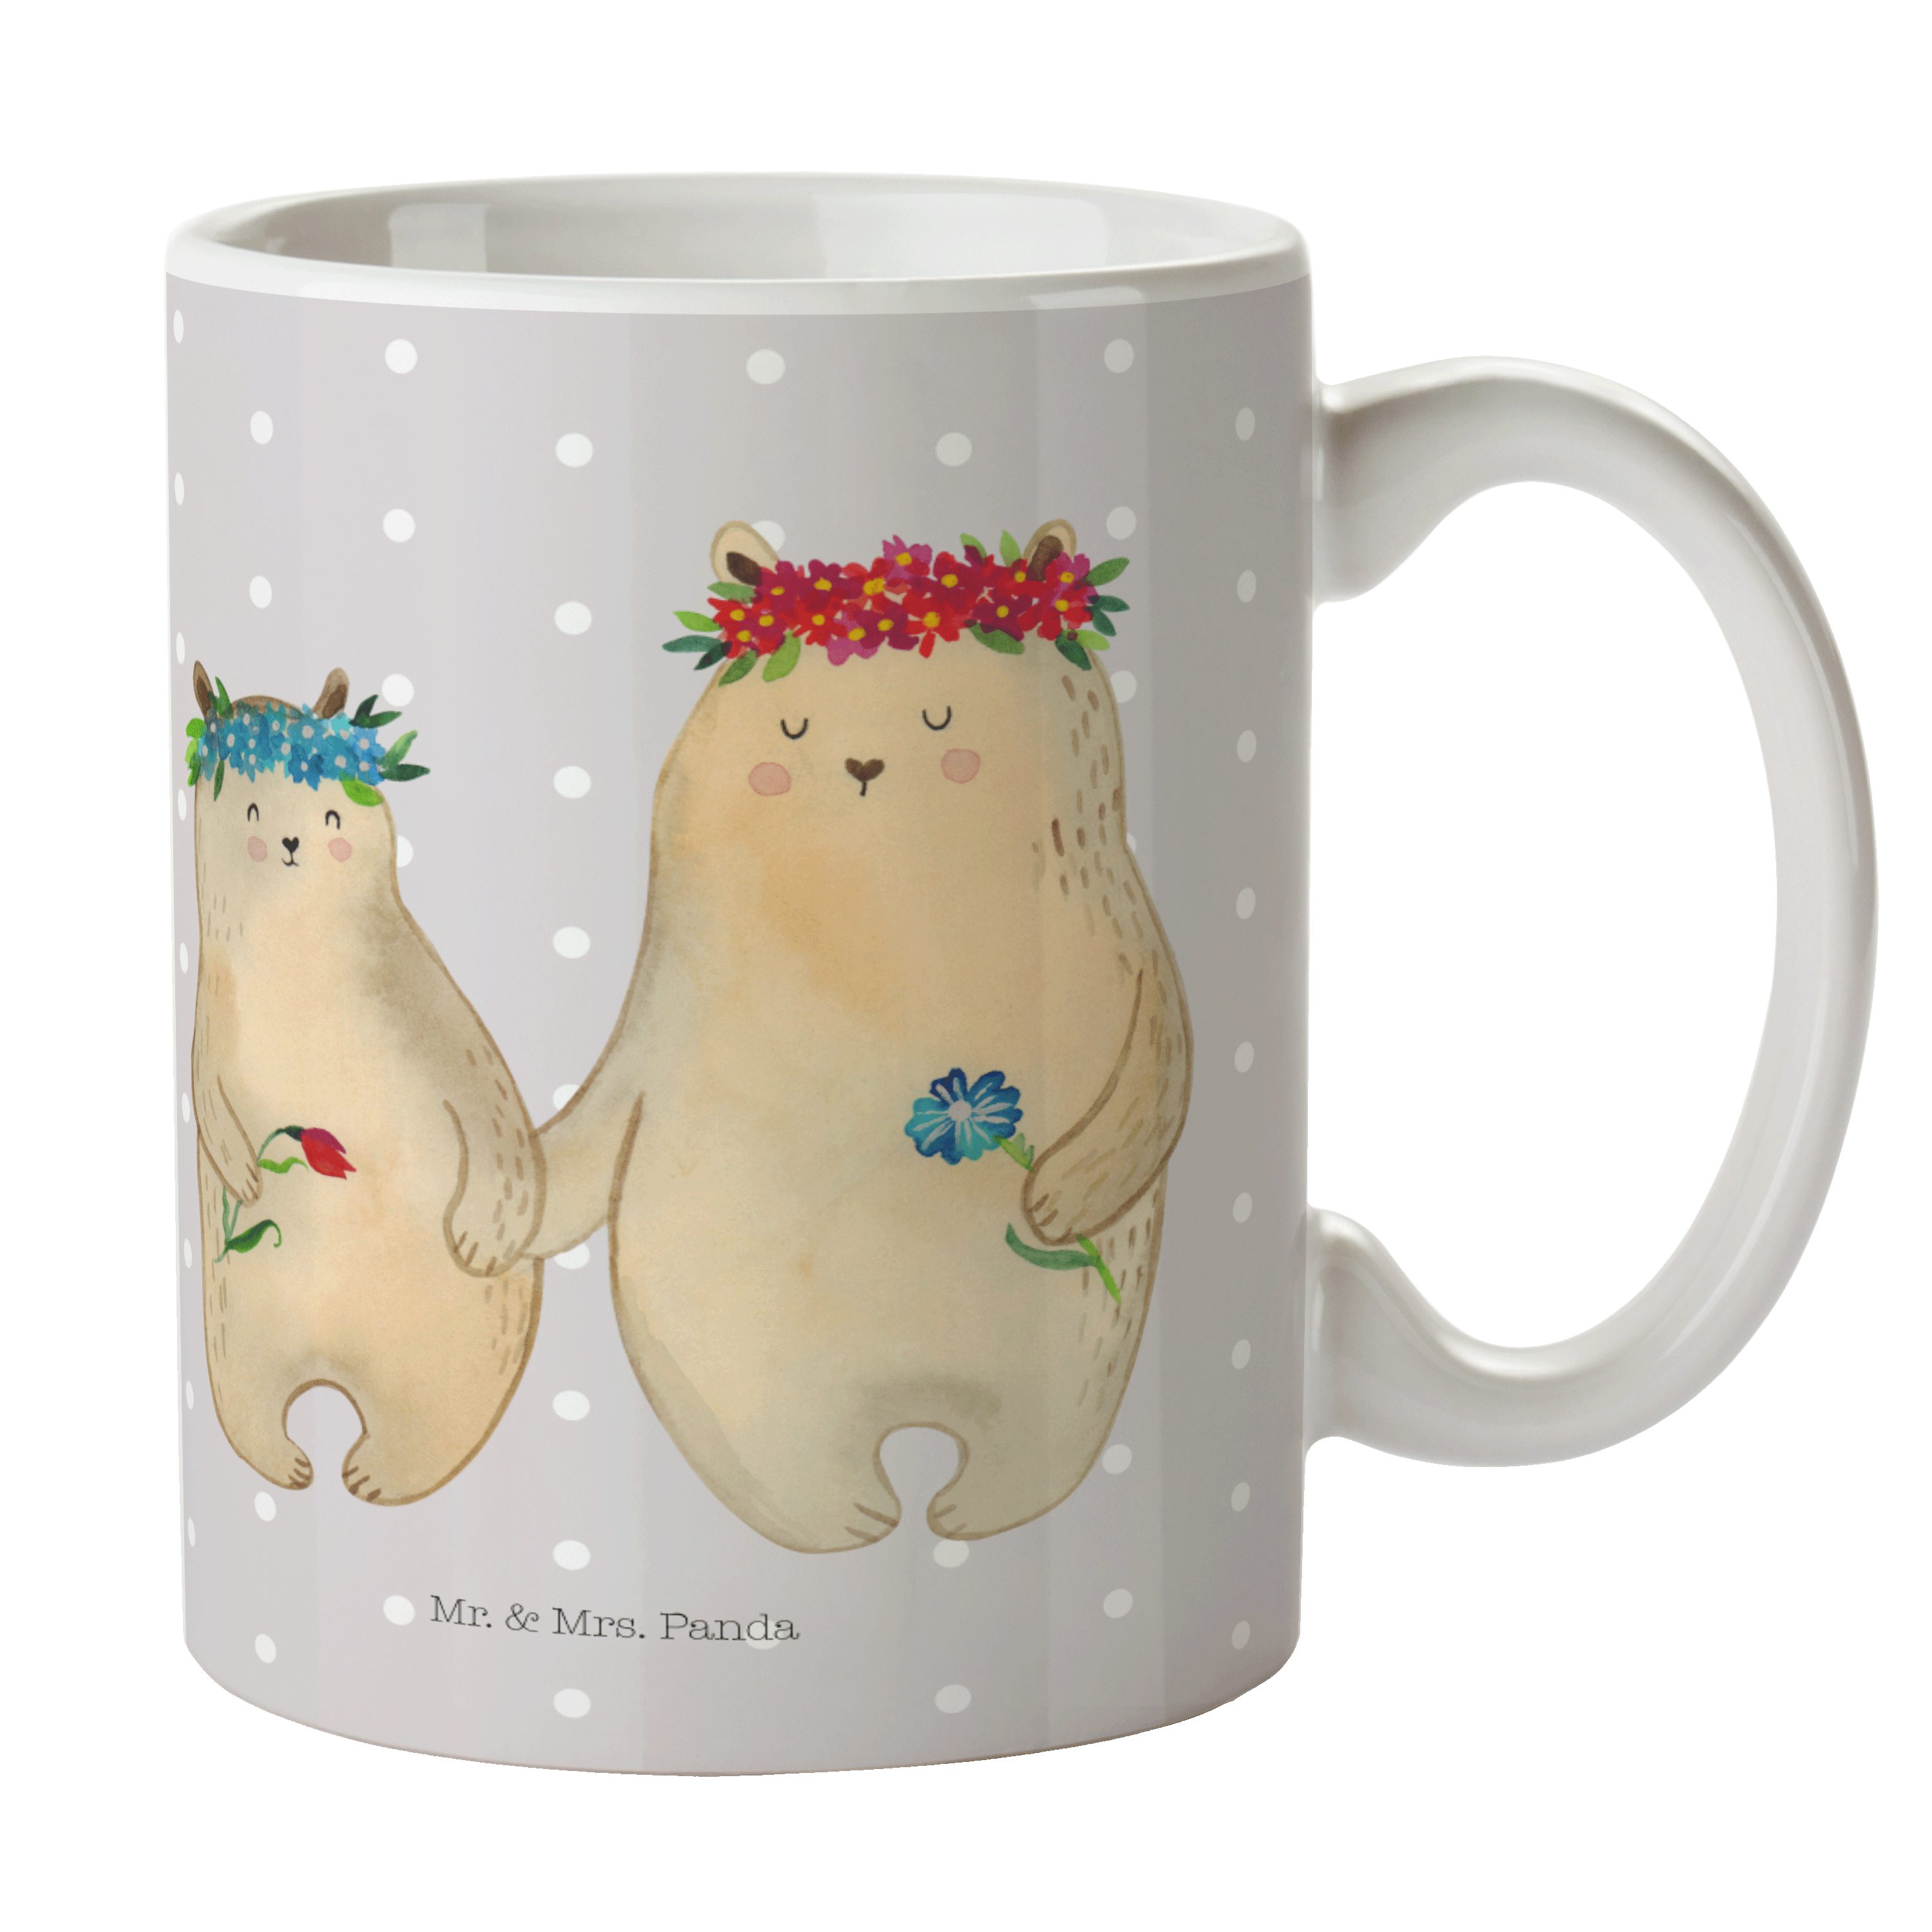 Mr. & Mrs. Panda Tasse Bären mit Blumenkranz - Grau Pastell - Geschenk, Bruder, Kaffeebecher, Keramik | Tassen